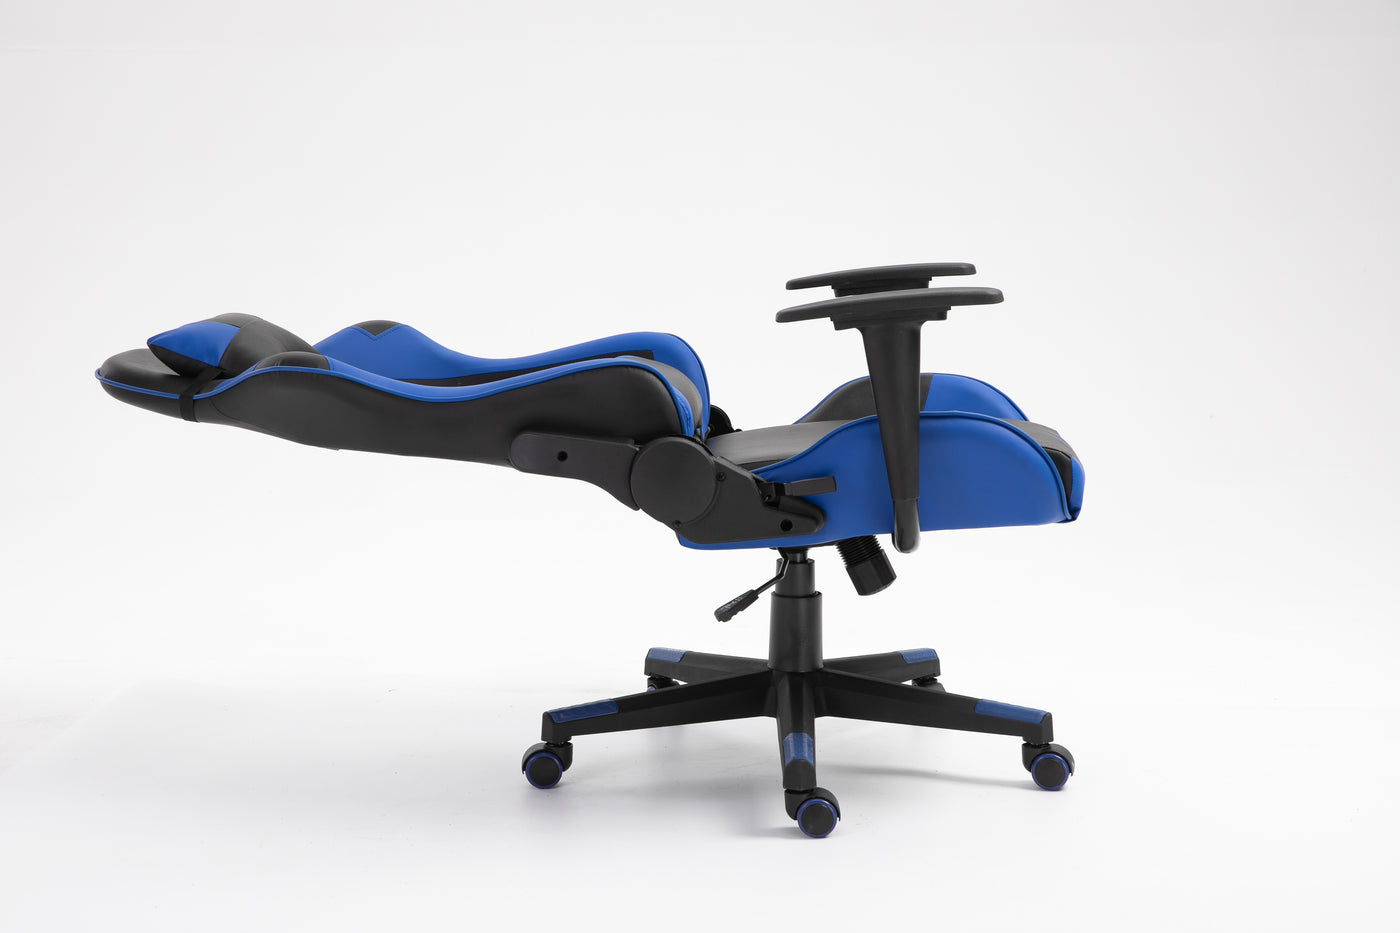 Bureaustoel -  bureau - stoel - verstelbaar - gaming